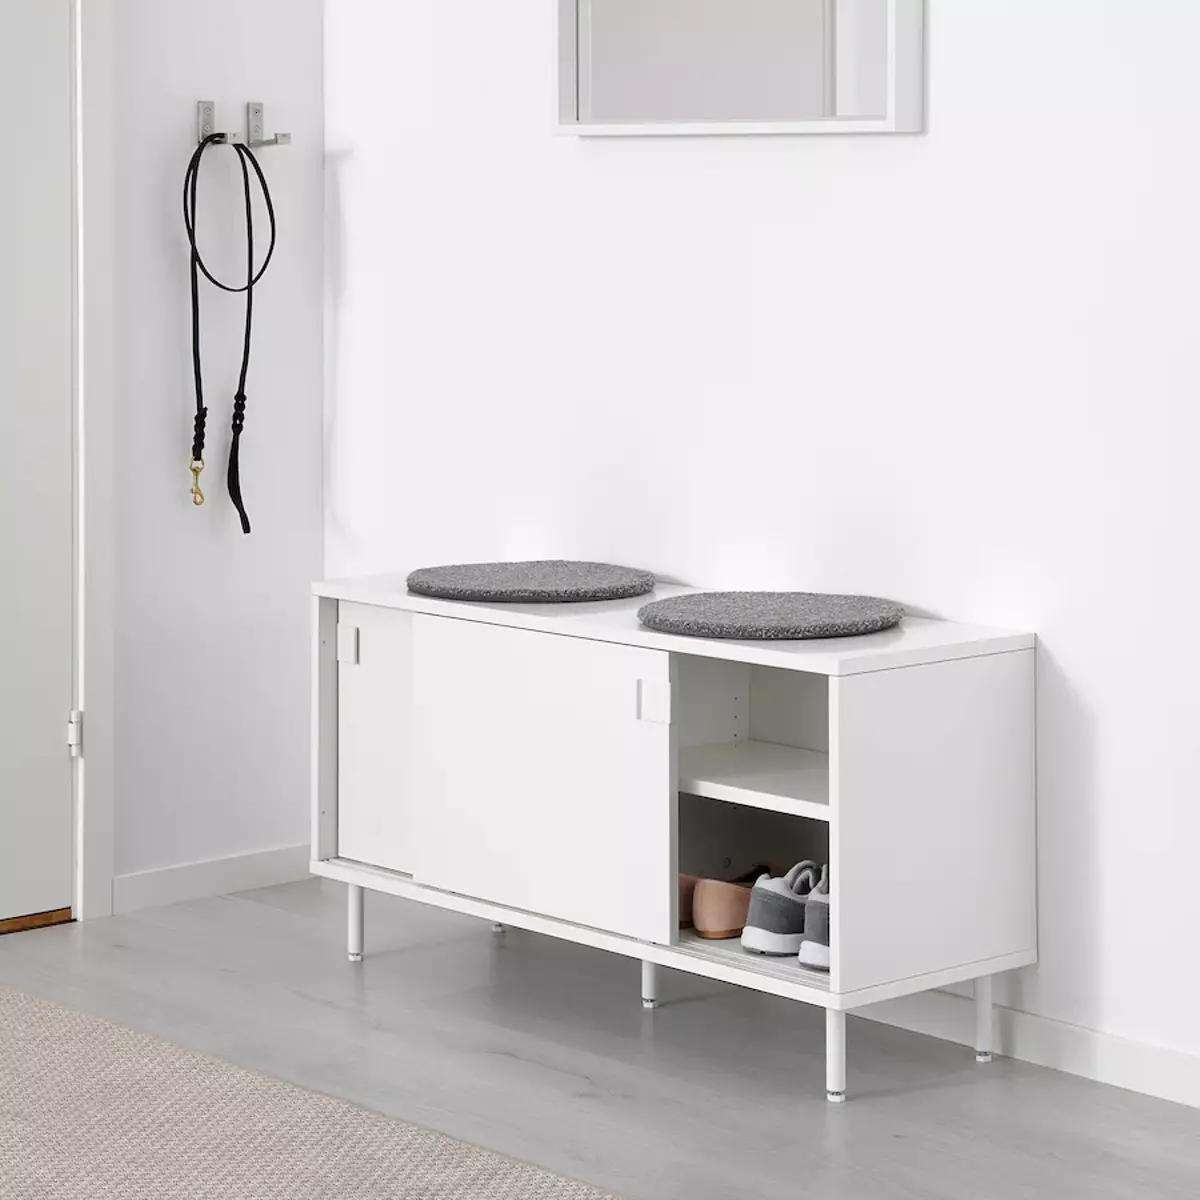 Recibidores Ikea | Este mueble ocupa poco espacio y te sirve como banco y como zapatero